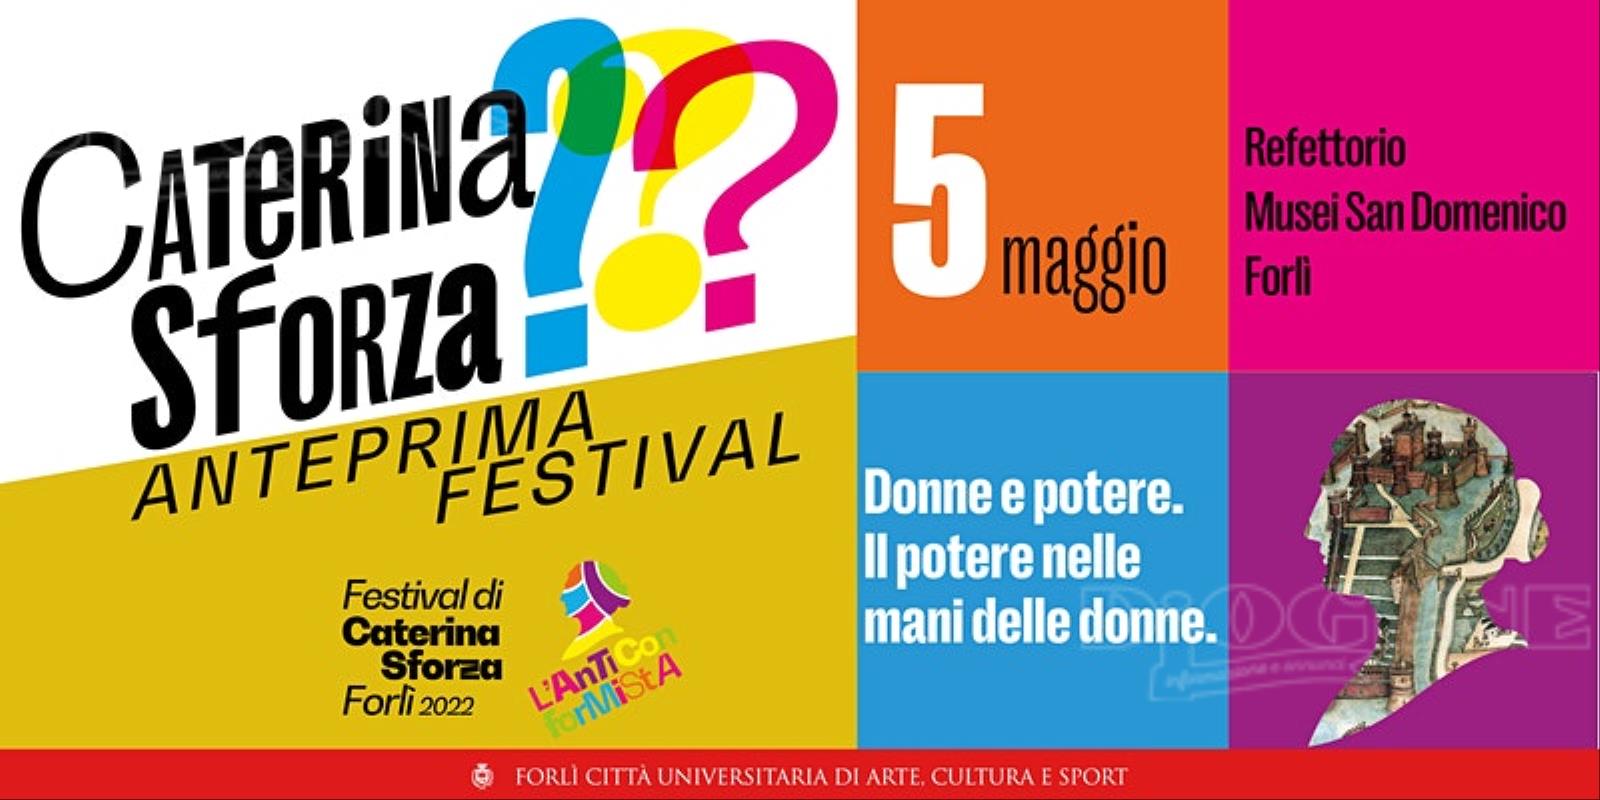 Anteprima Festival di Caterina Sforza Forlì 2022.